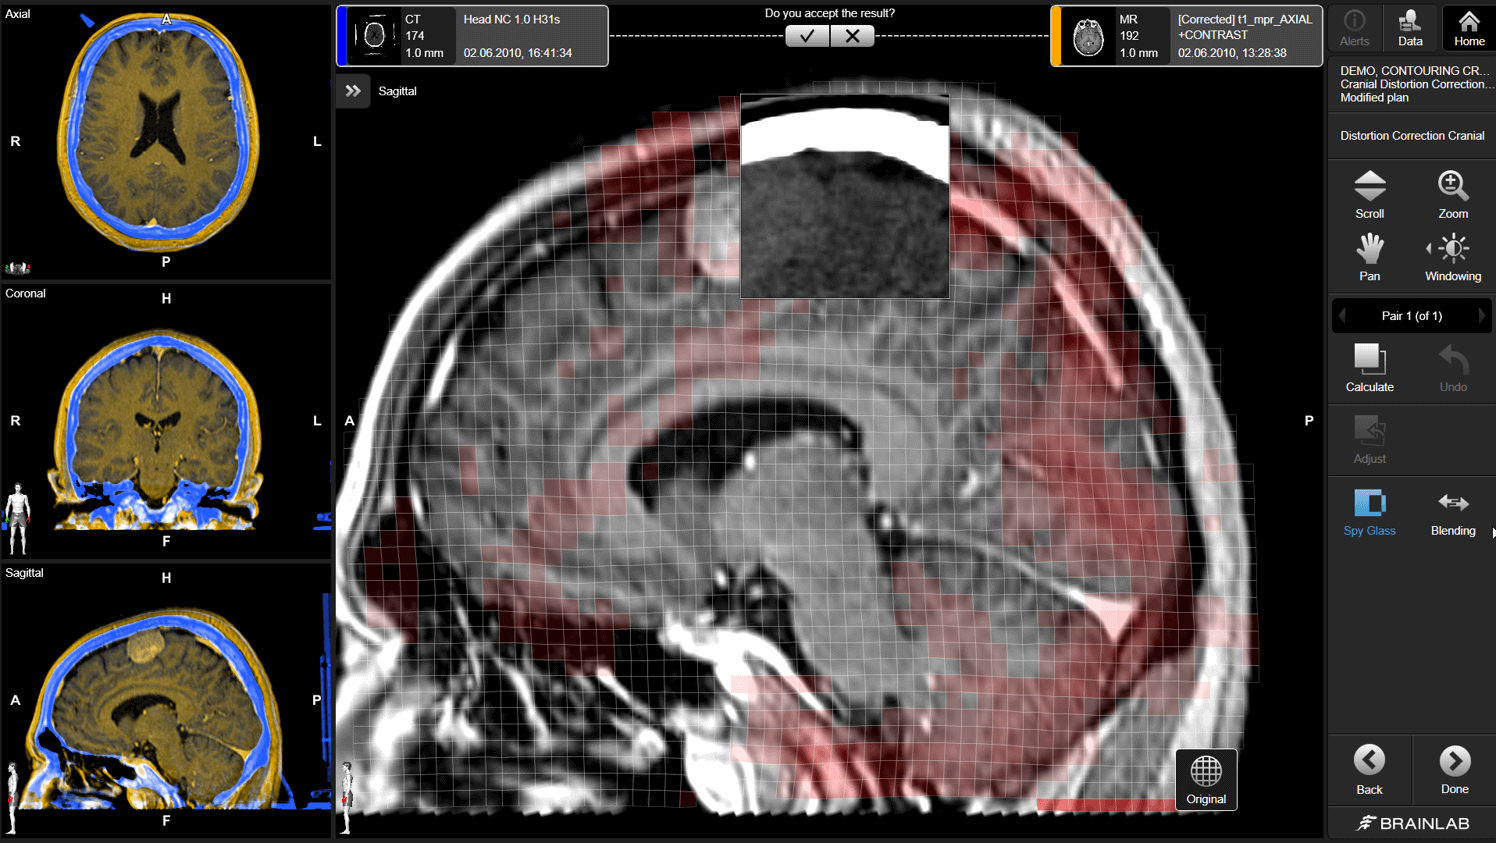 Écran du logiciel Brainlab Elements Distortion Correction montrant une fusion d’images IRM et TDM d’un cerveau pendant la correction des distorsions au cours de la fusion.